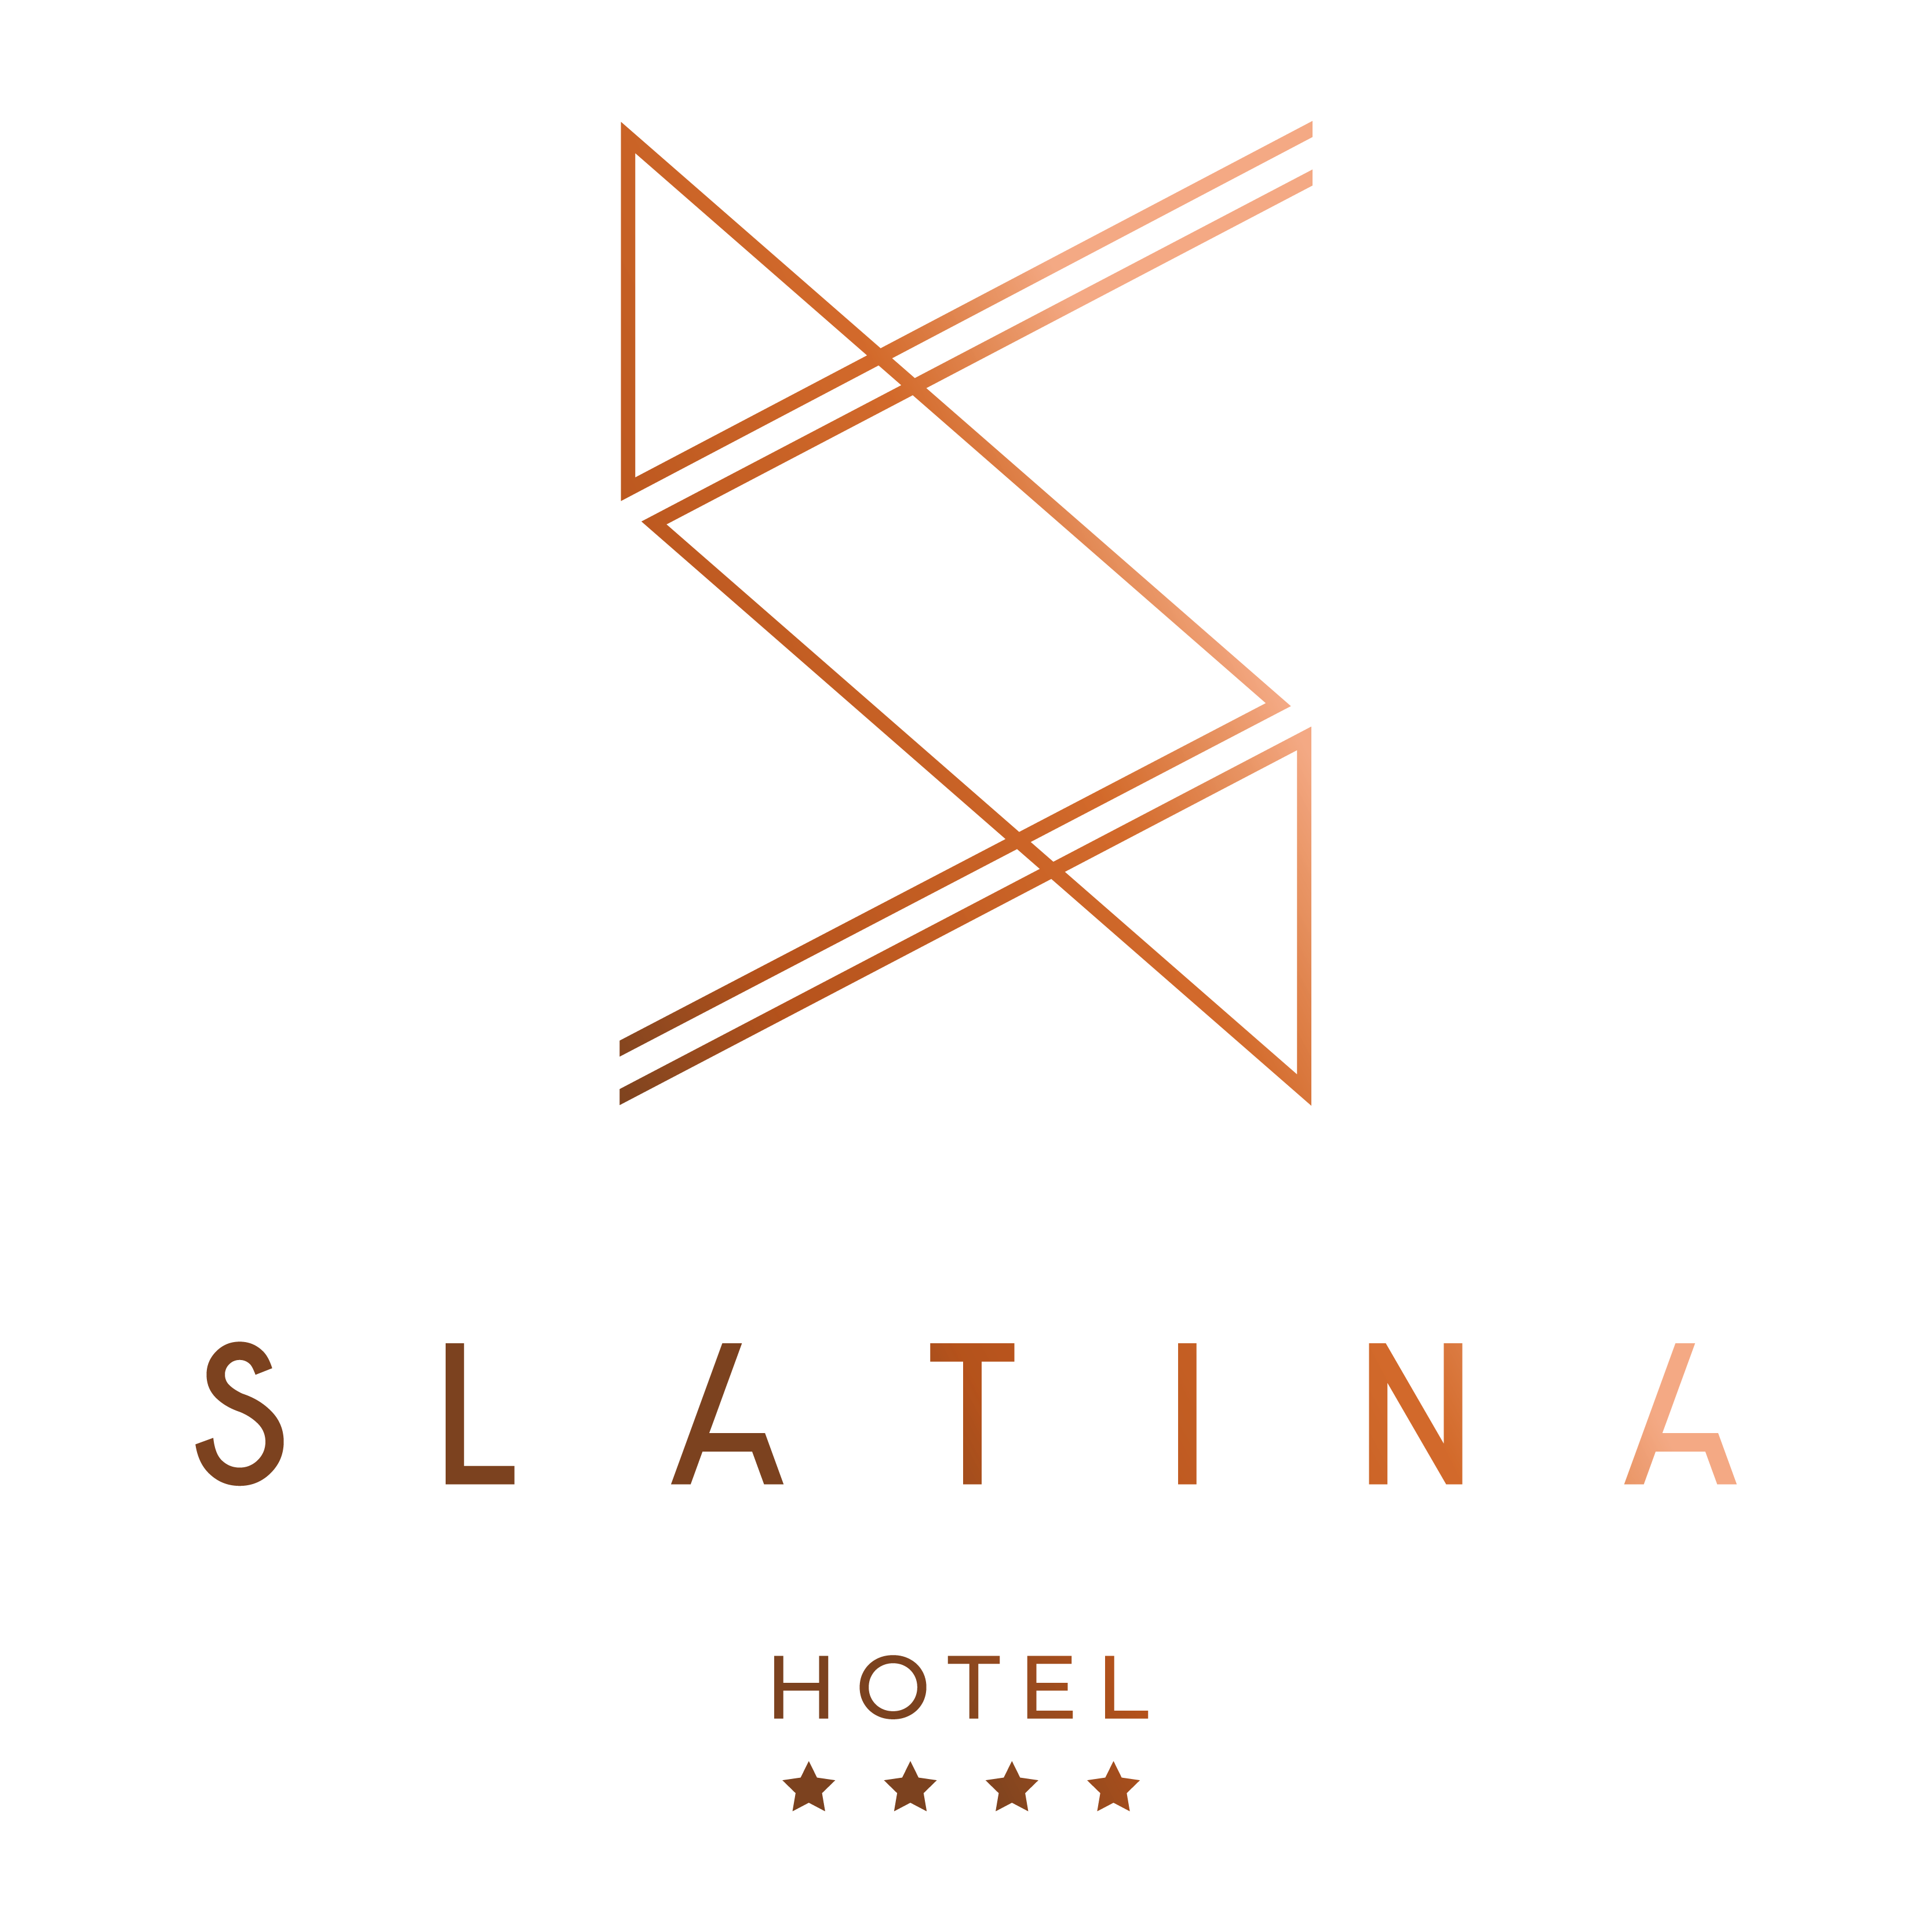 hotel_slatina_konferencije_logo